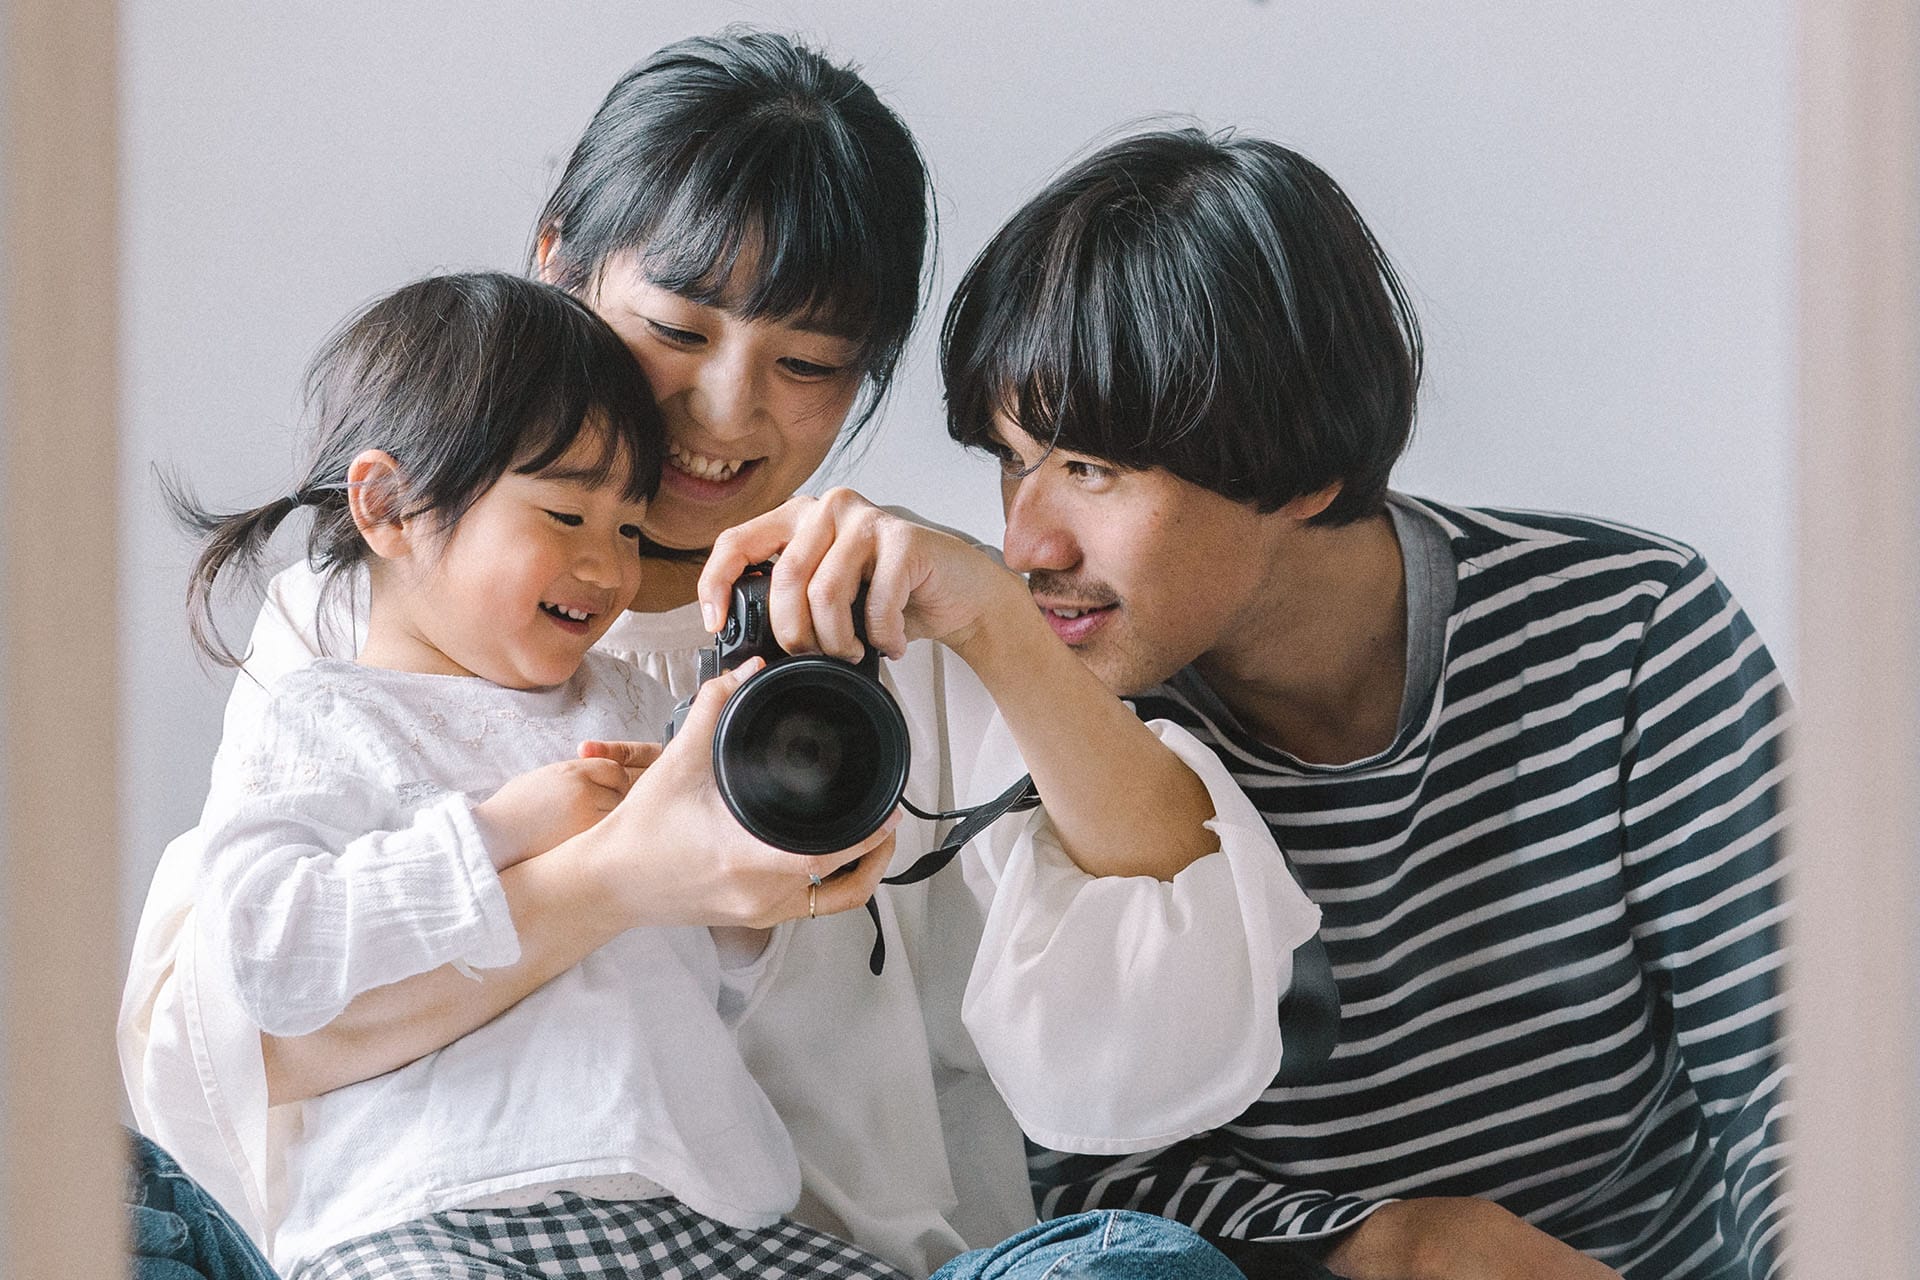 yurieさんはプリントデイズサイト内「#家族の写真と。もっと。」を撮影された